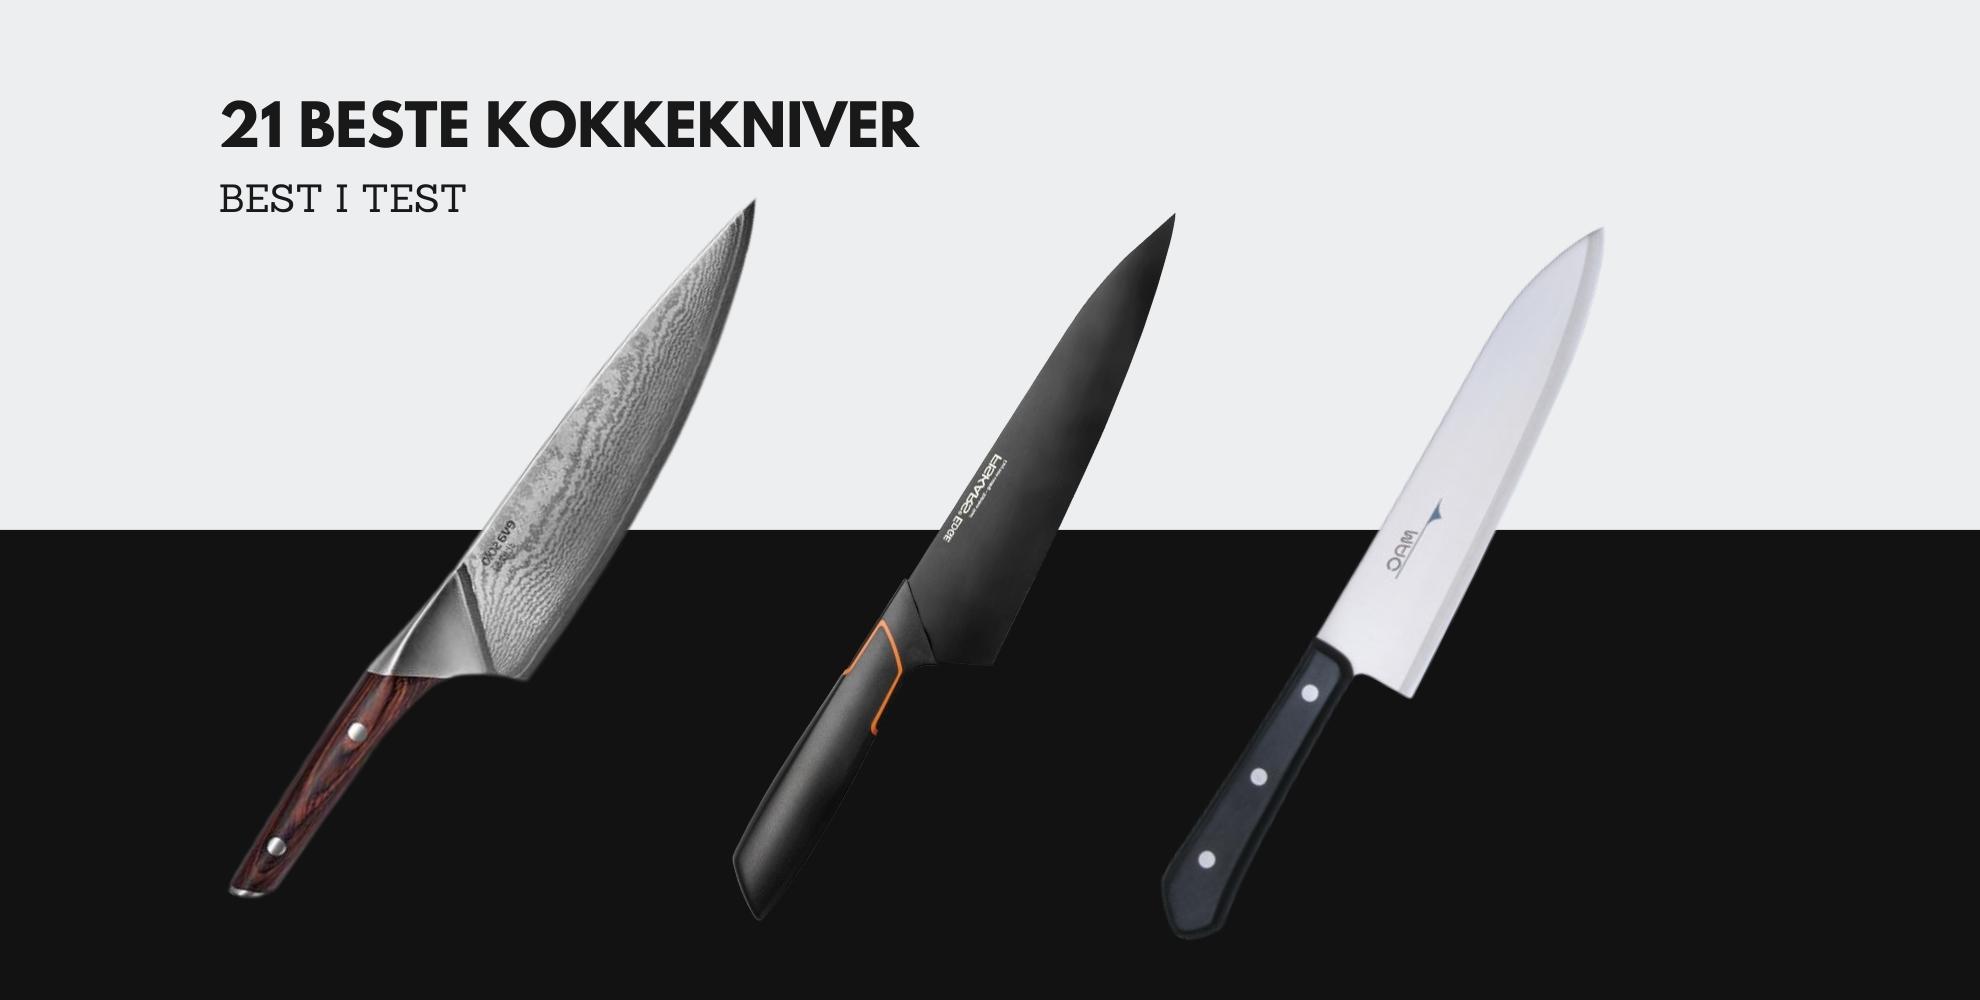 Bilde av 3 kokkekniver og tekst som sier: 21 beste kokkekniver, best i test